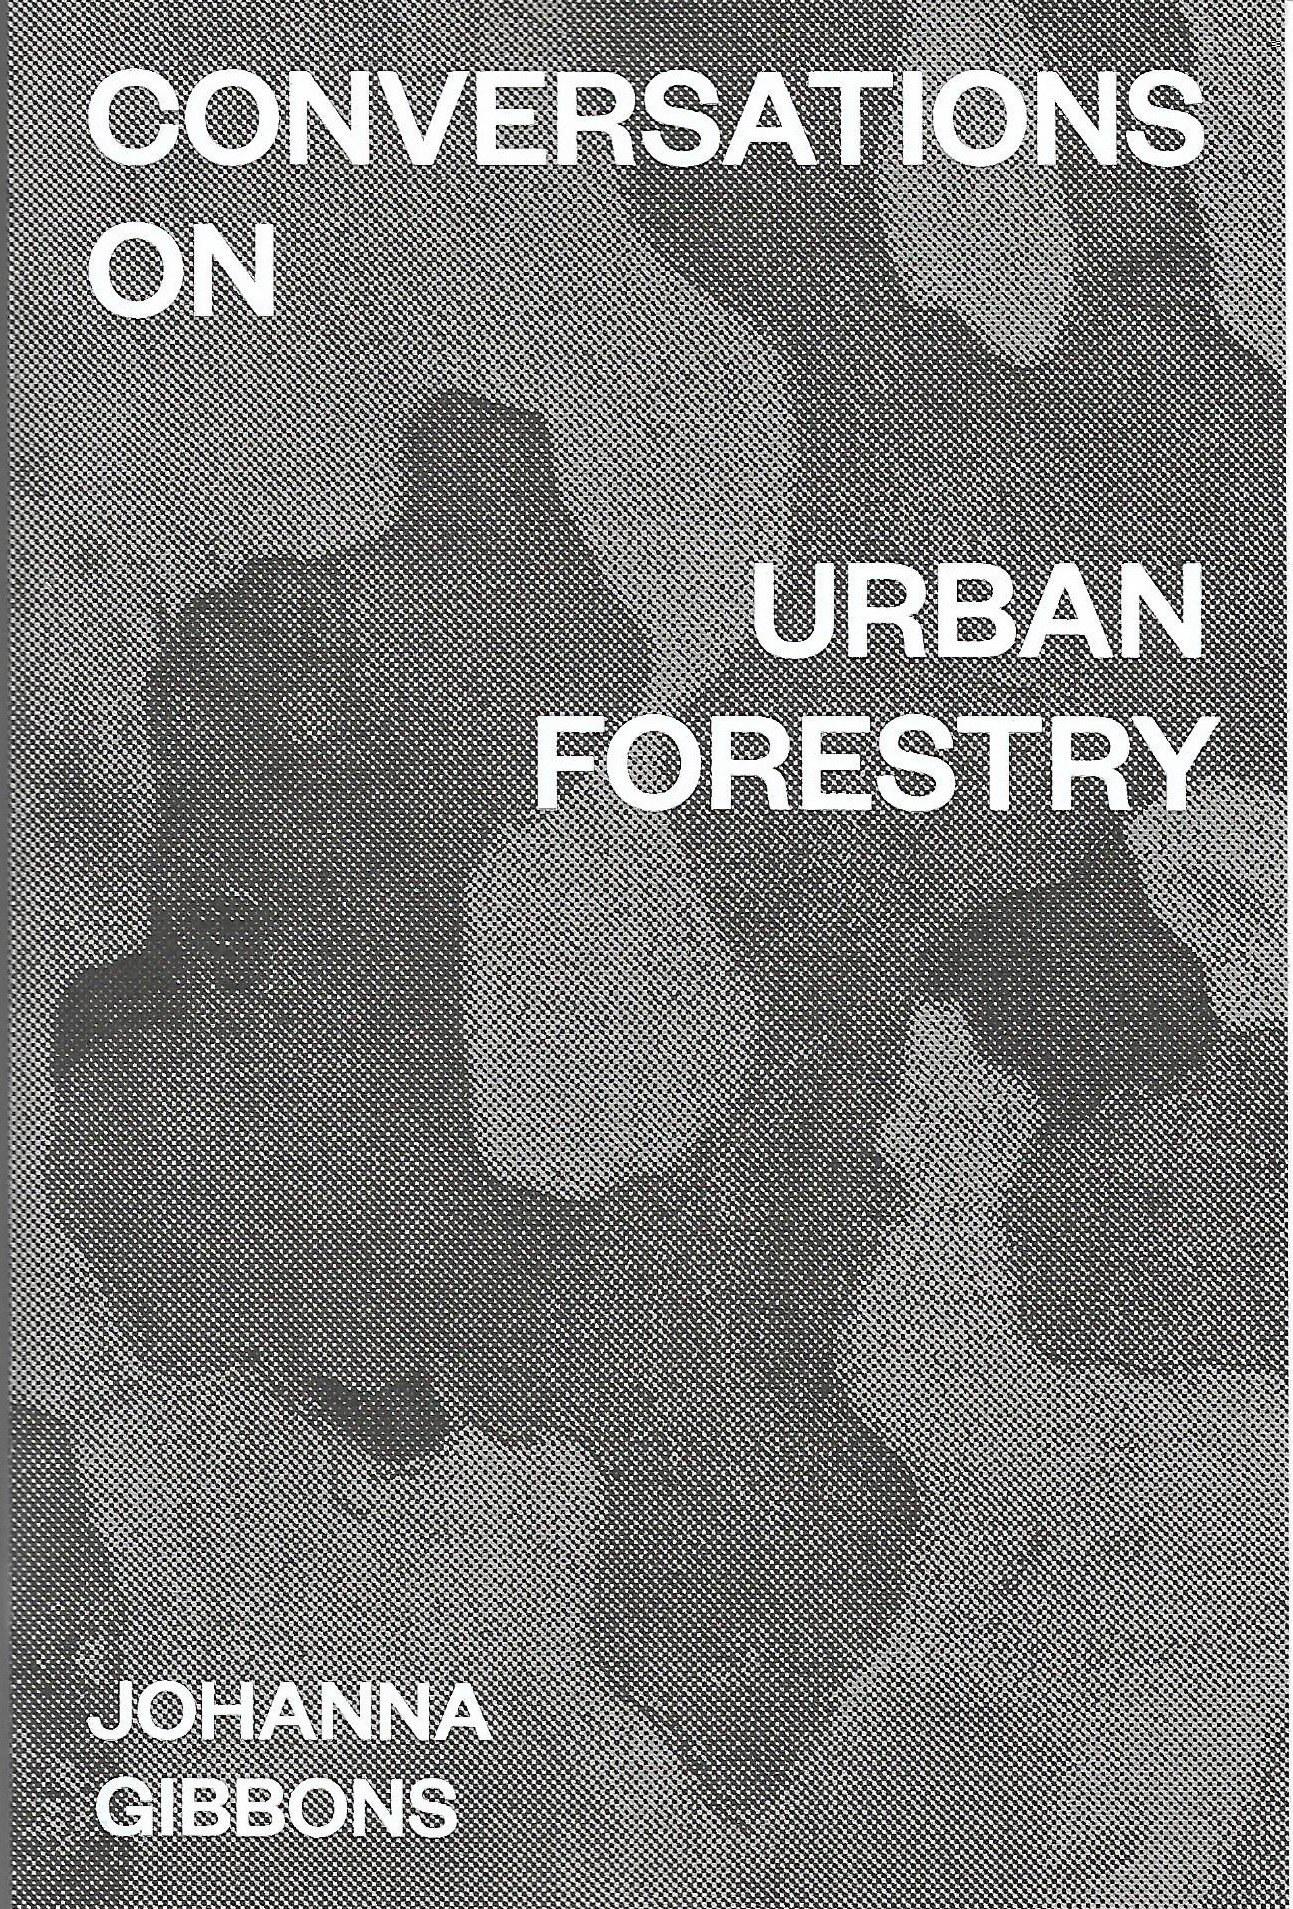 urbanforestry gibbons cover (2).jpg